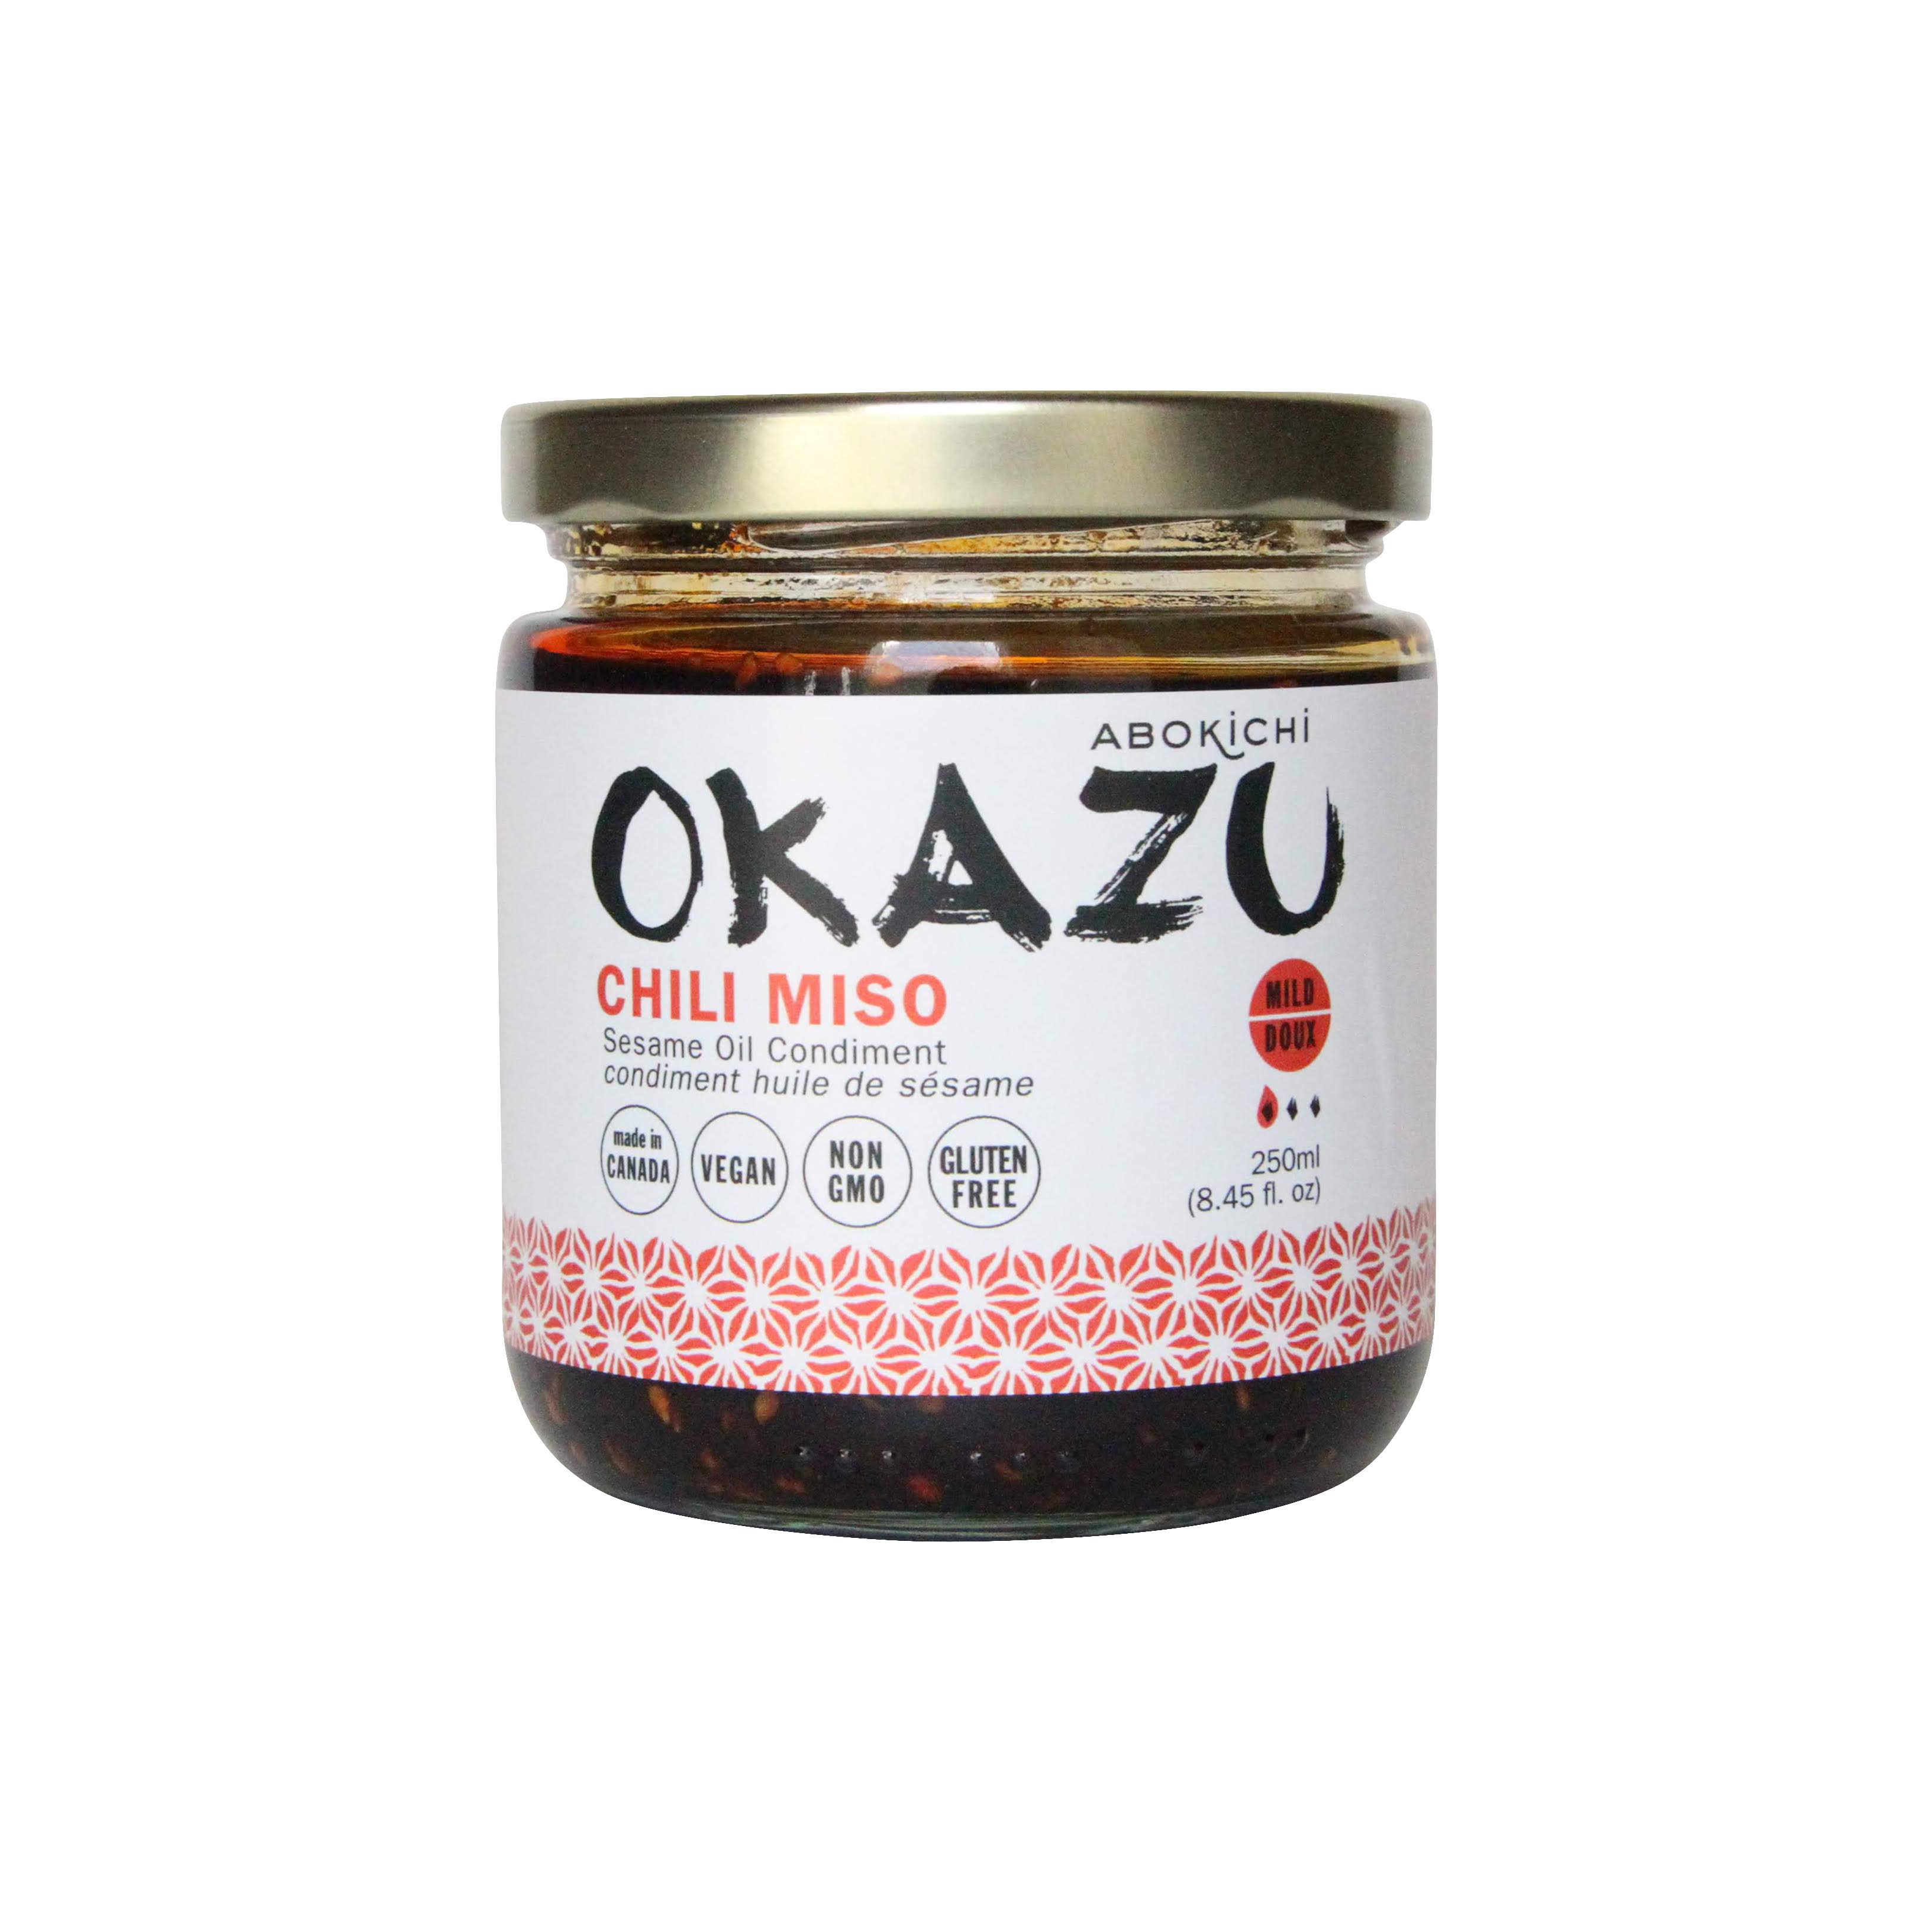 Okazu Chili Miso Oil